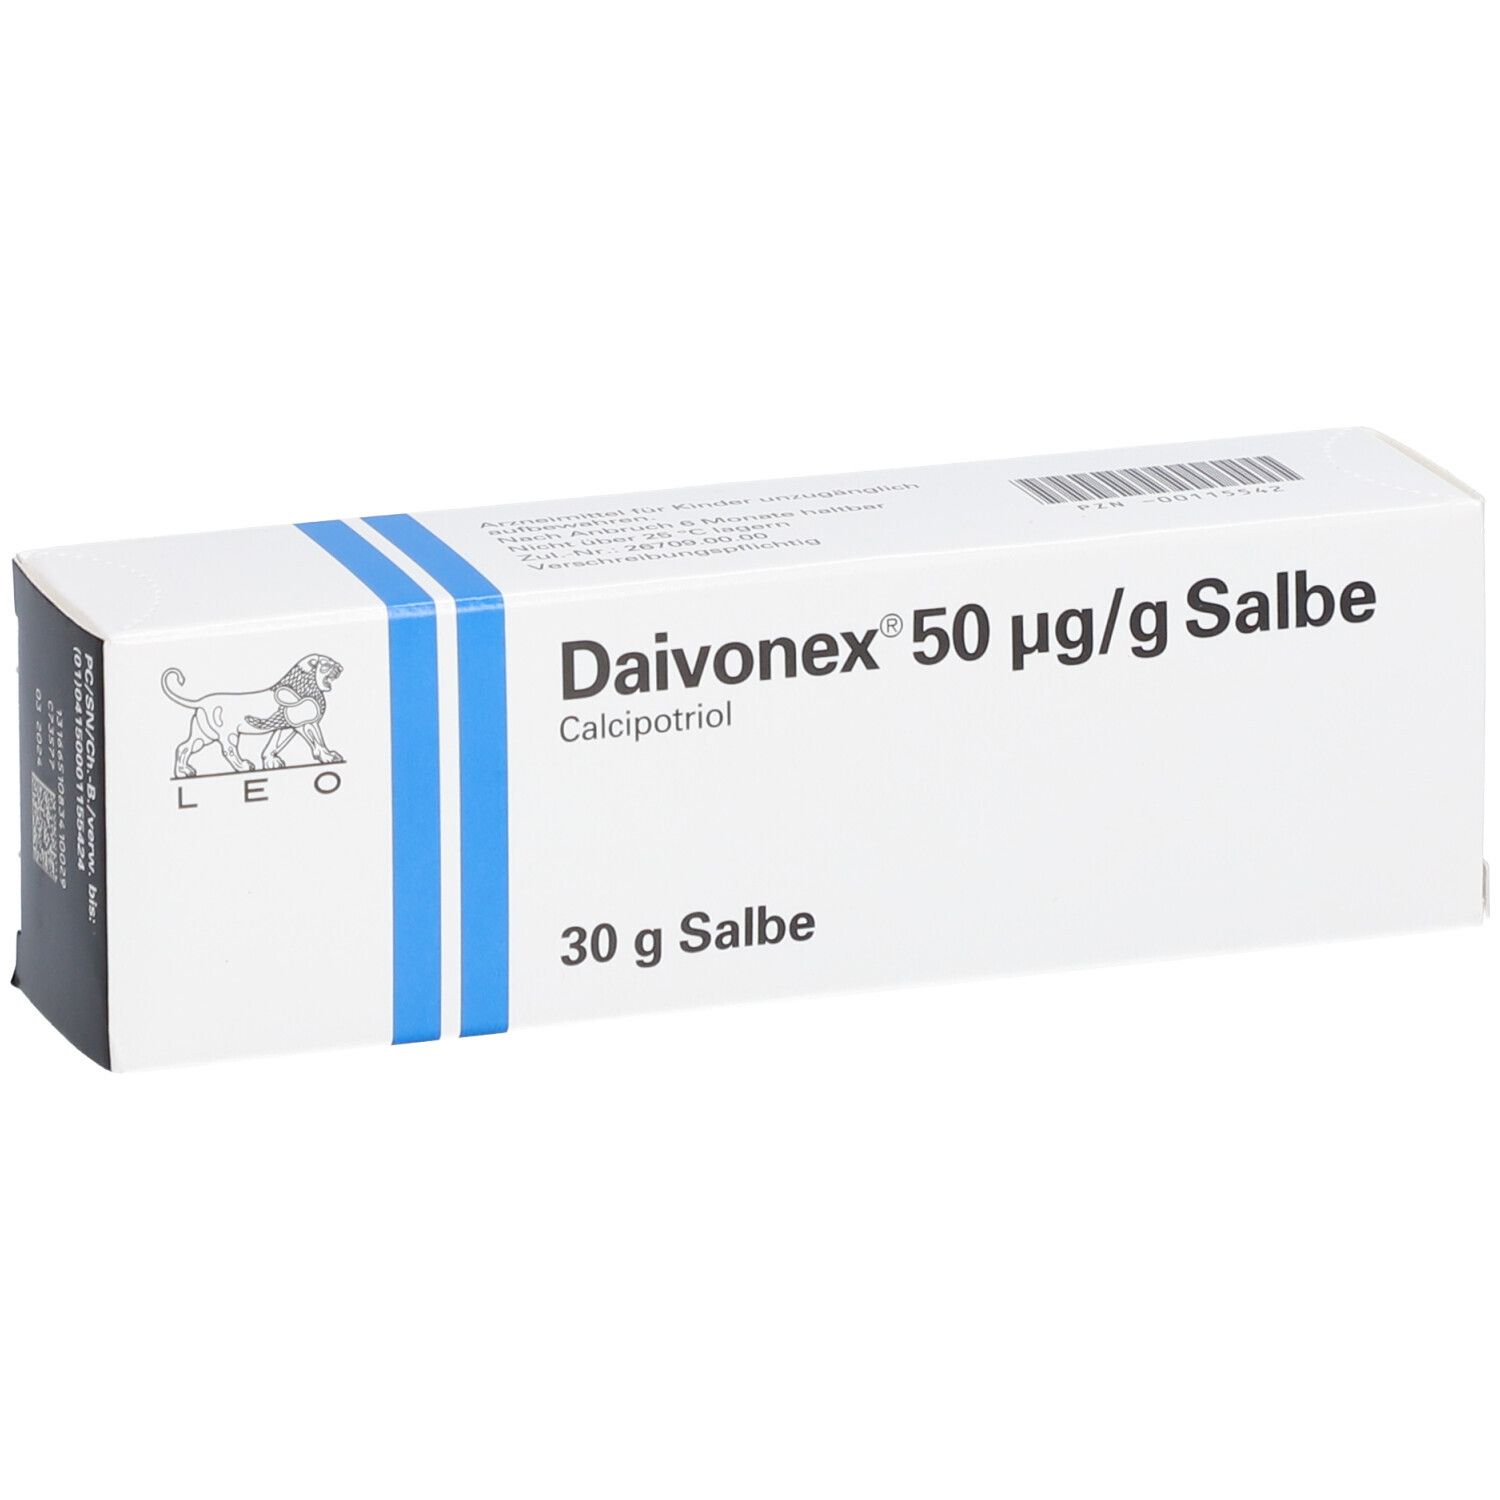 Daivonex® Salbe